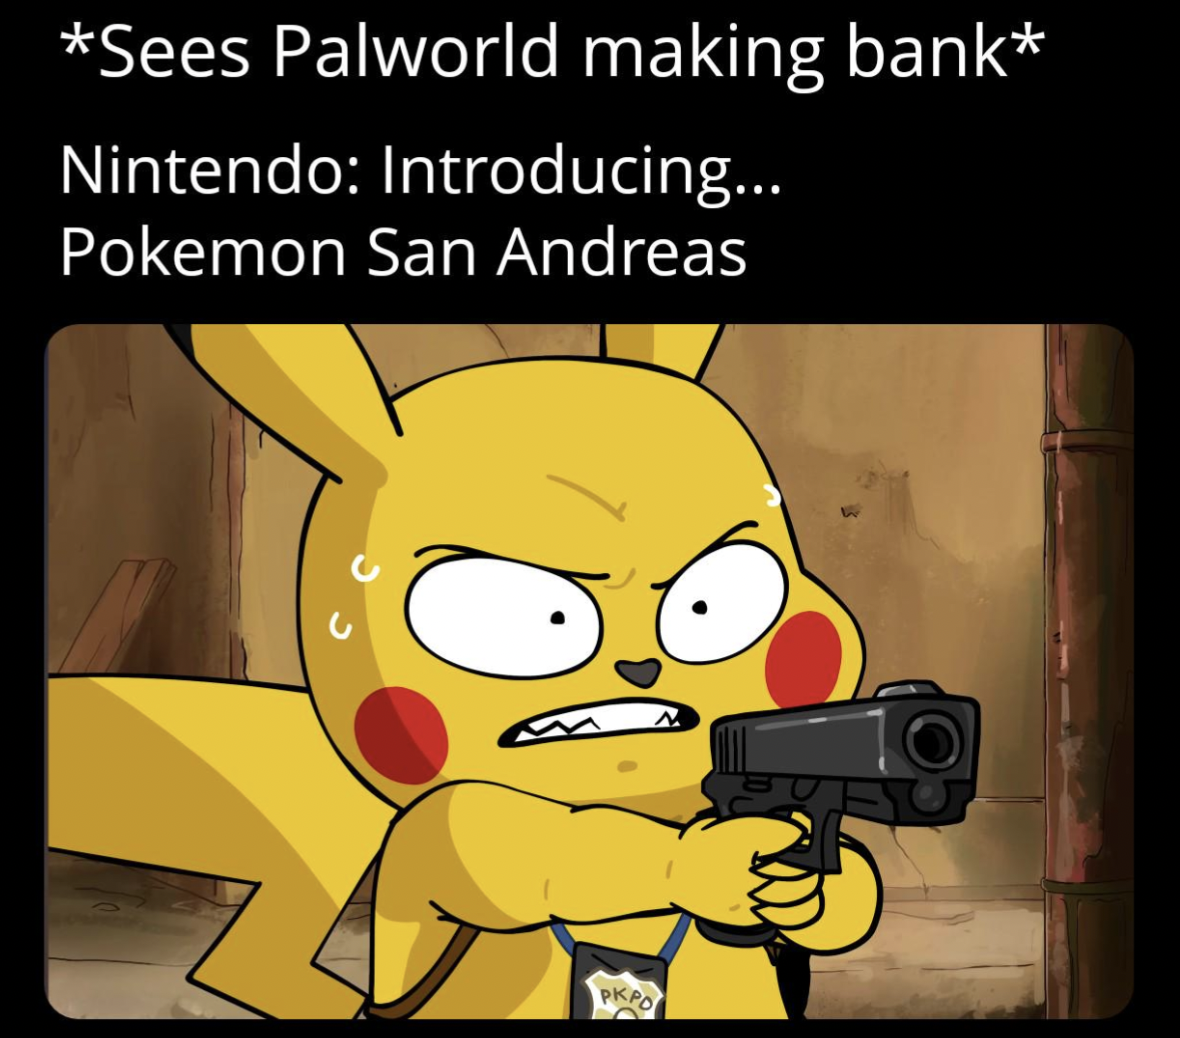 cartoon - Sees Palworld making bank Nintendo Introducing... Pokemon San Andreas Pkpo